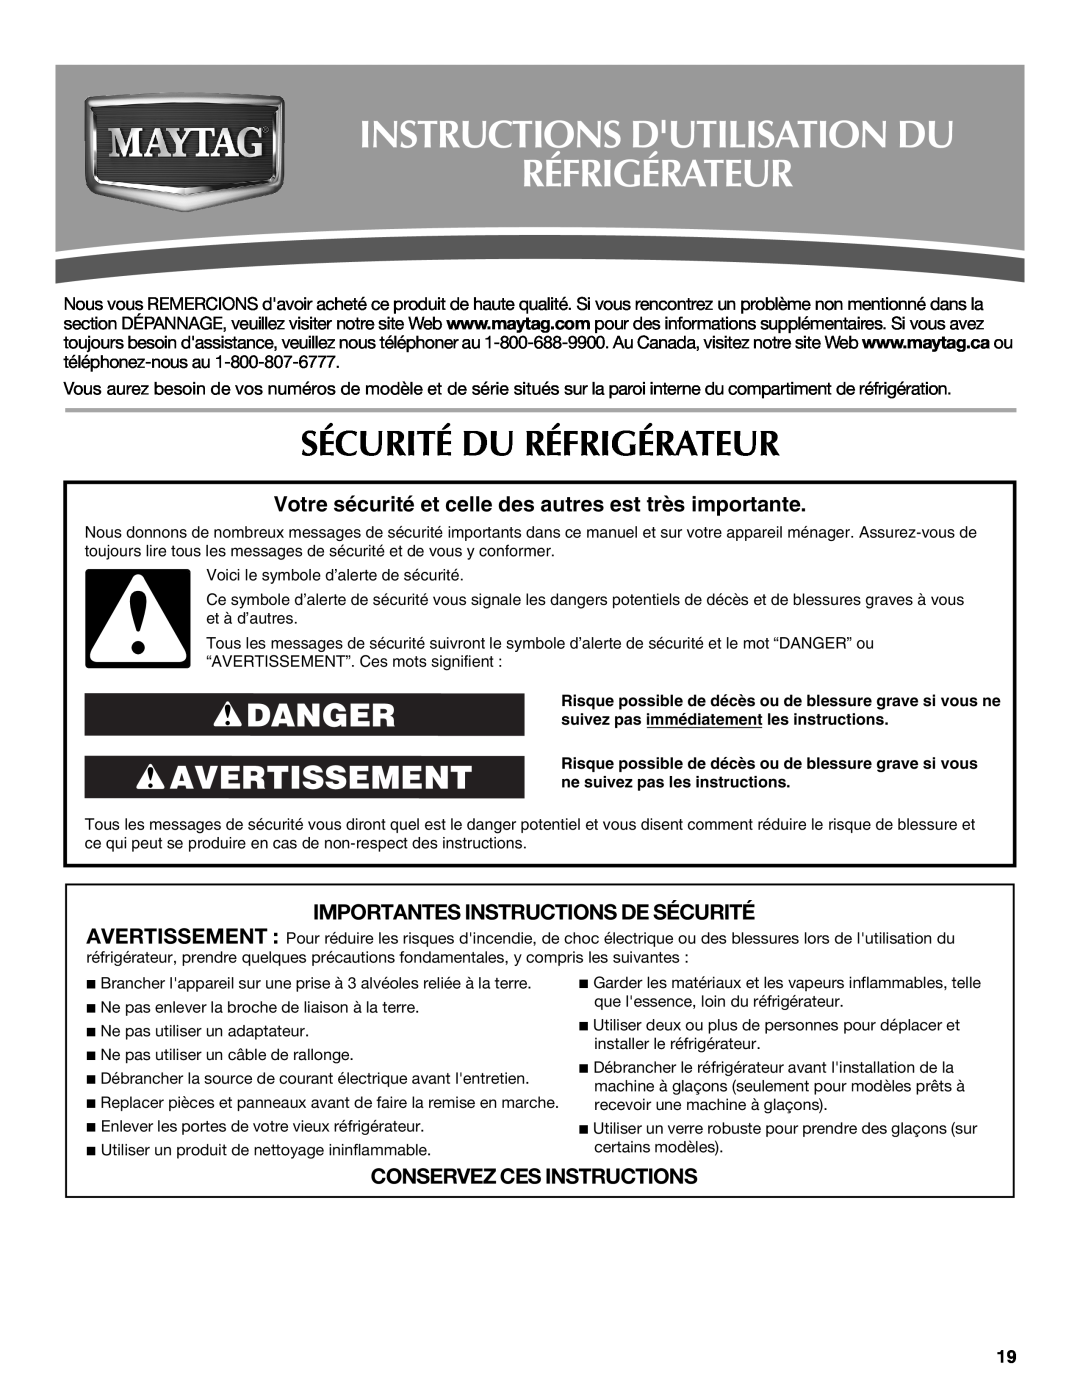 Maytag W10213163A, W10213164A Instructions Dutilisation Du Réfrigérateur, Sécurité Du Réfrigérateur, Danger Avertissement 